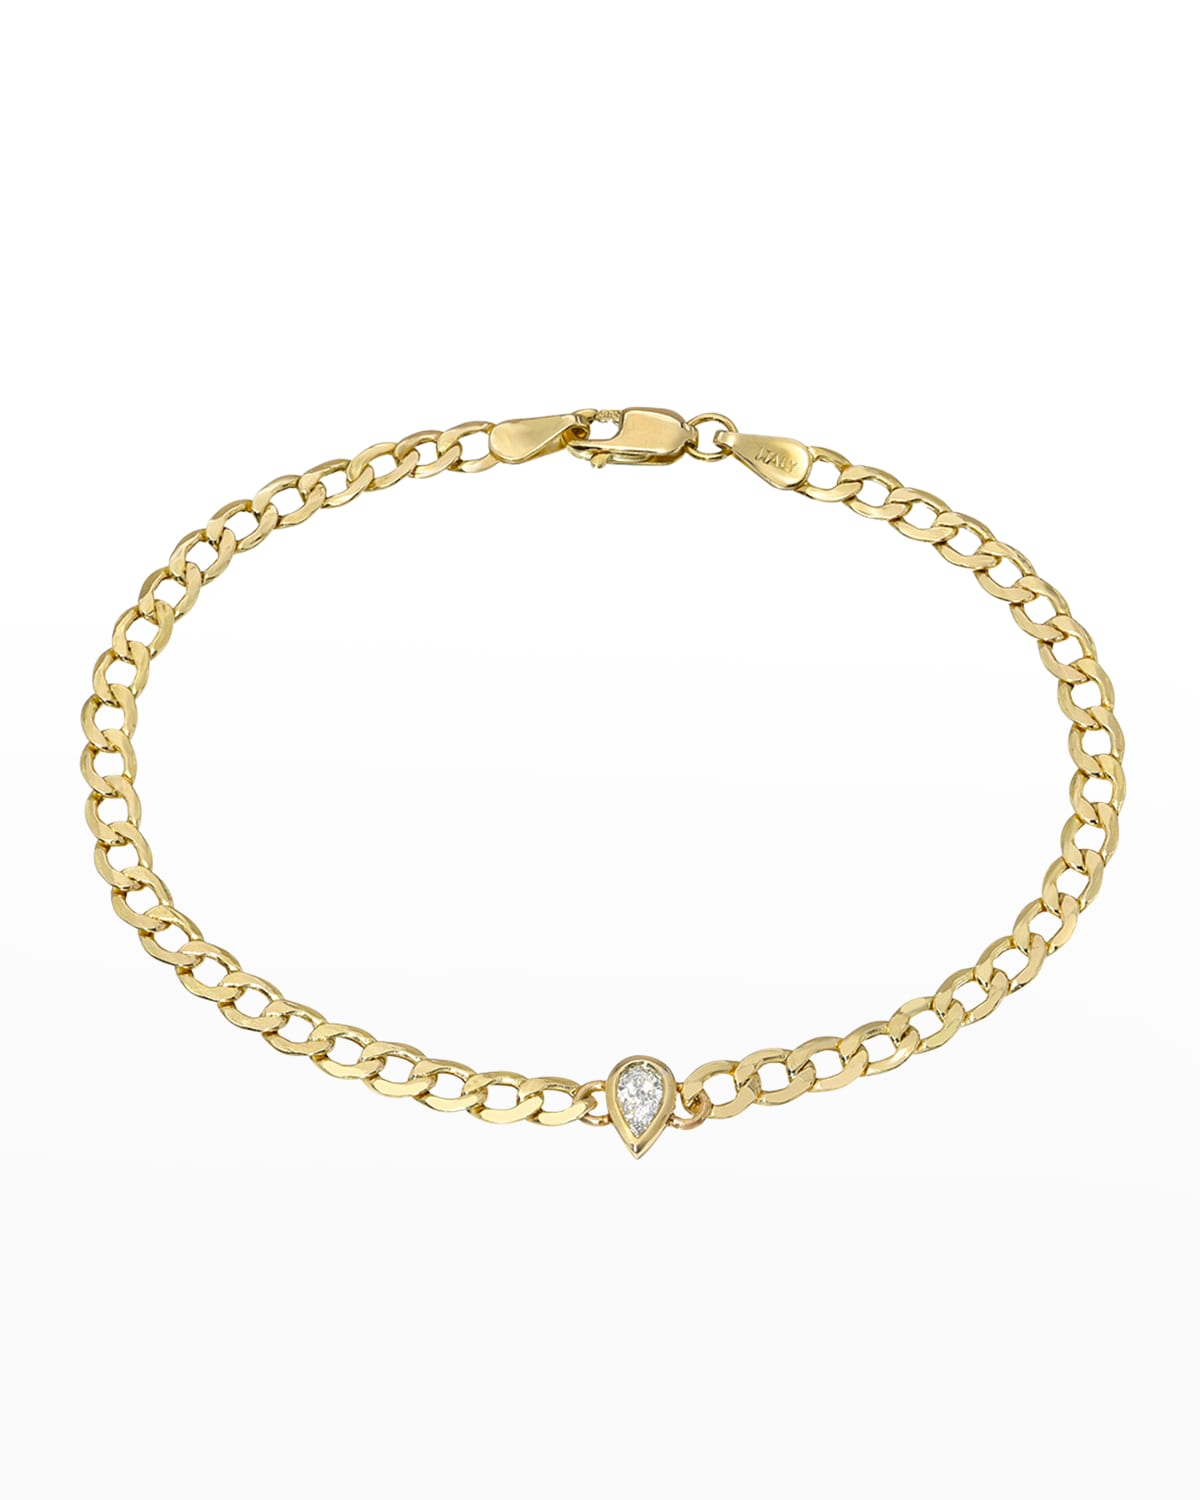 Zoe Lev Jewelry 14K Gold Cuban Link Bracelet with Diamond Pear Bezel